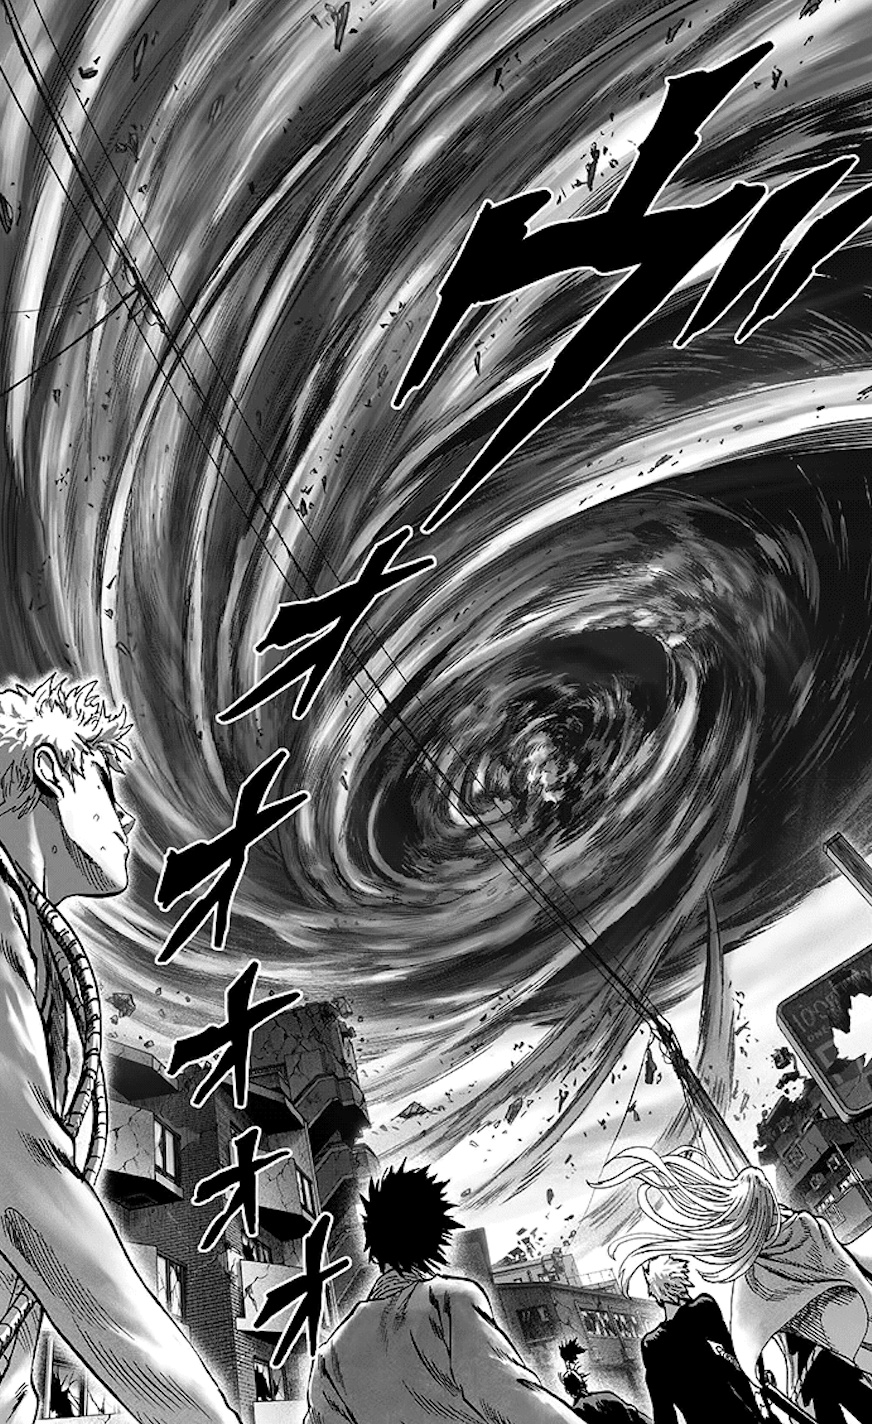 Quem no universo de Naruto seria capaz de derrotar Tatsumaki? - Página 2 75526110